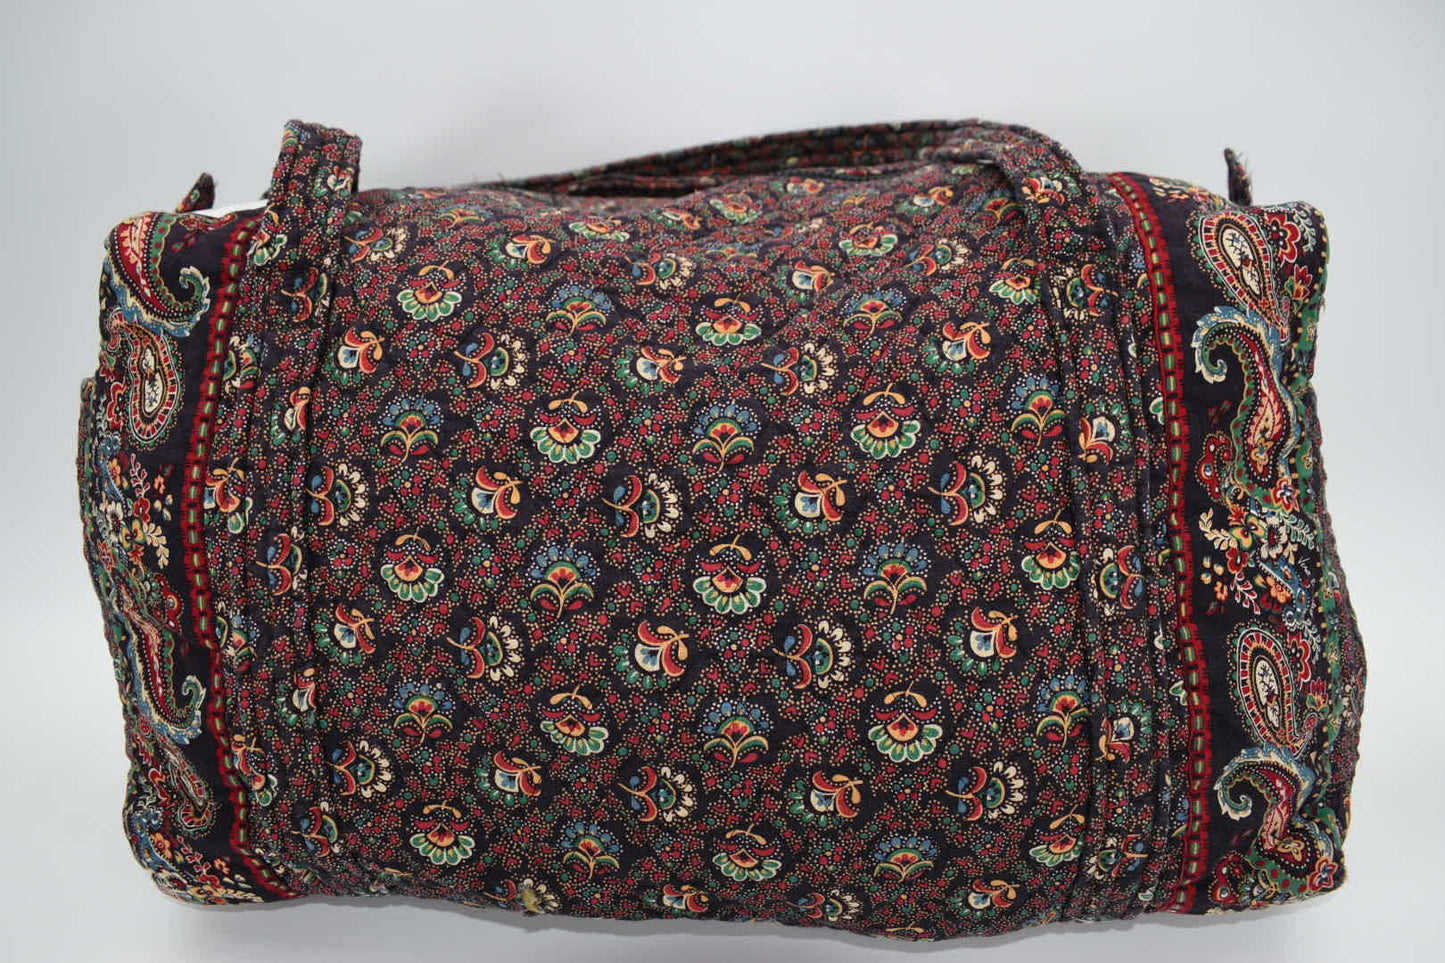 Vintage Vera Bradley Medium Duffel Bag in "Colette Black-1995" Pattern